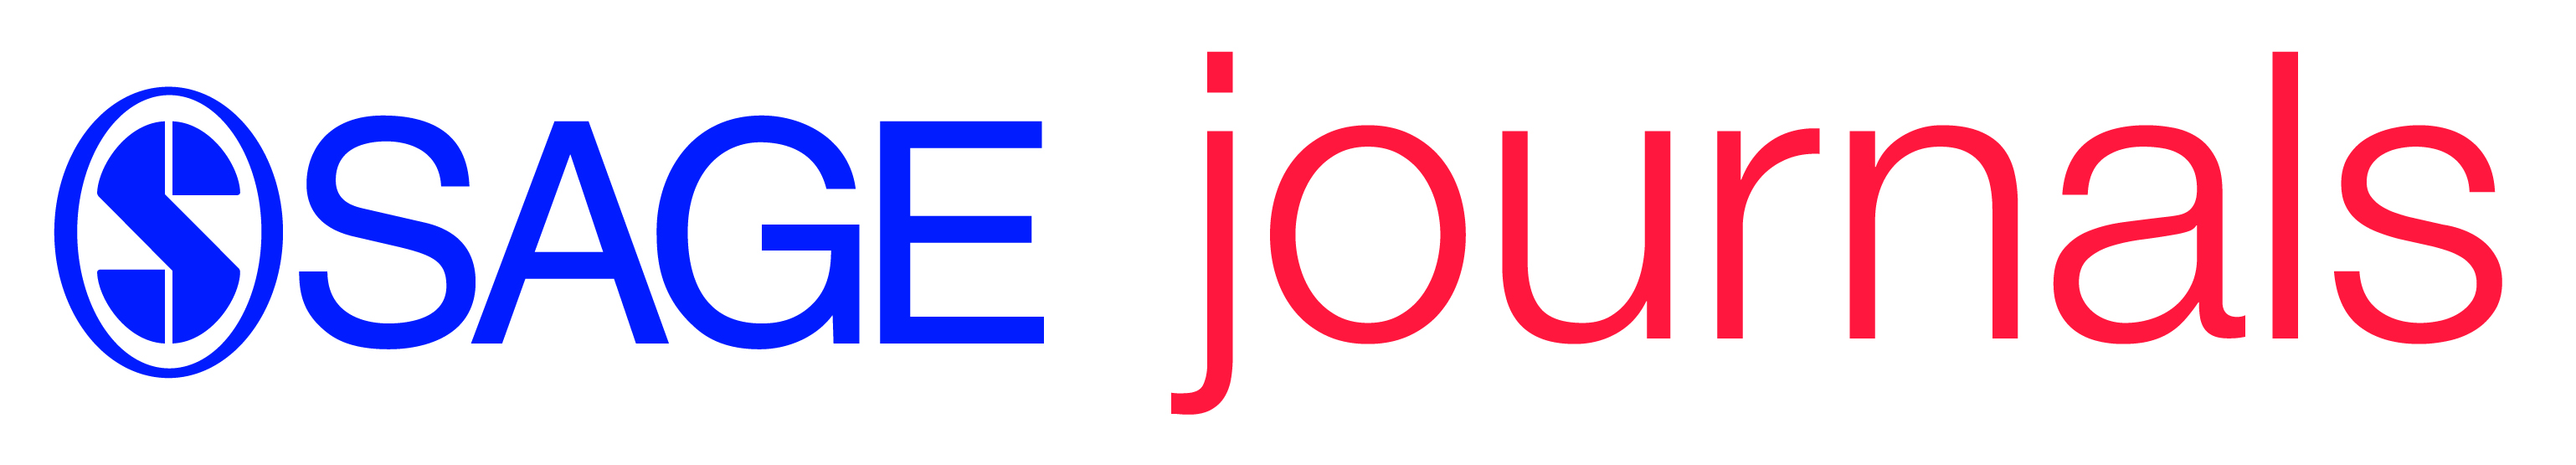 sage_journals_logo